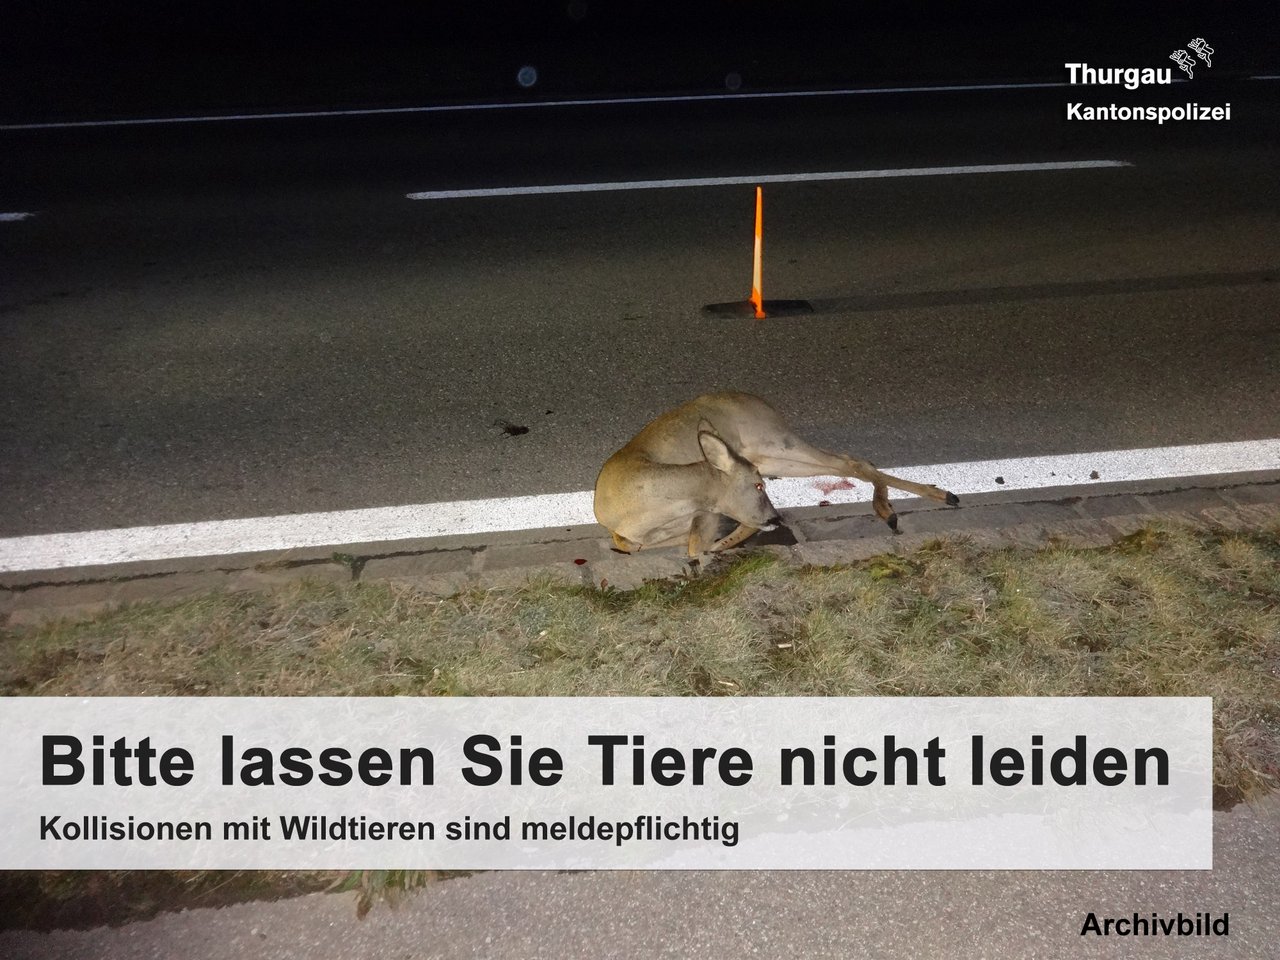 Bei Dämmerung müssen Autofahrer besonders achtsam sein. (Symbolbild Kantonspolizei Thurgau)